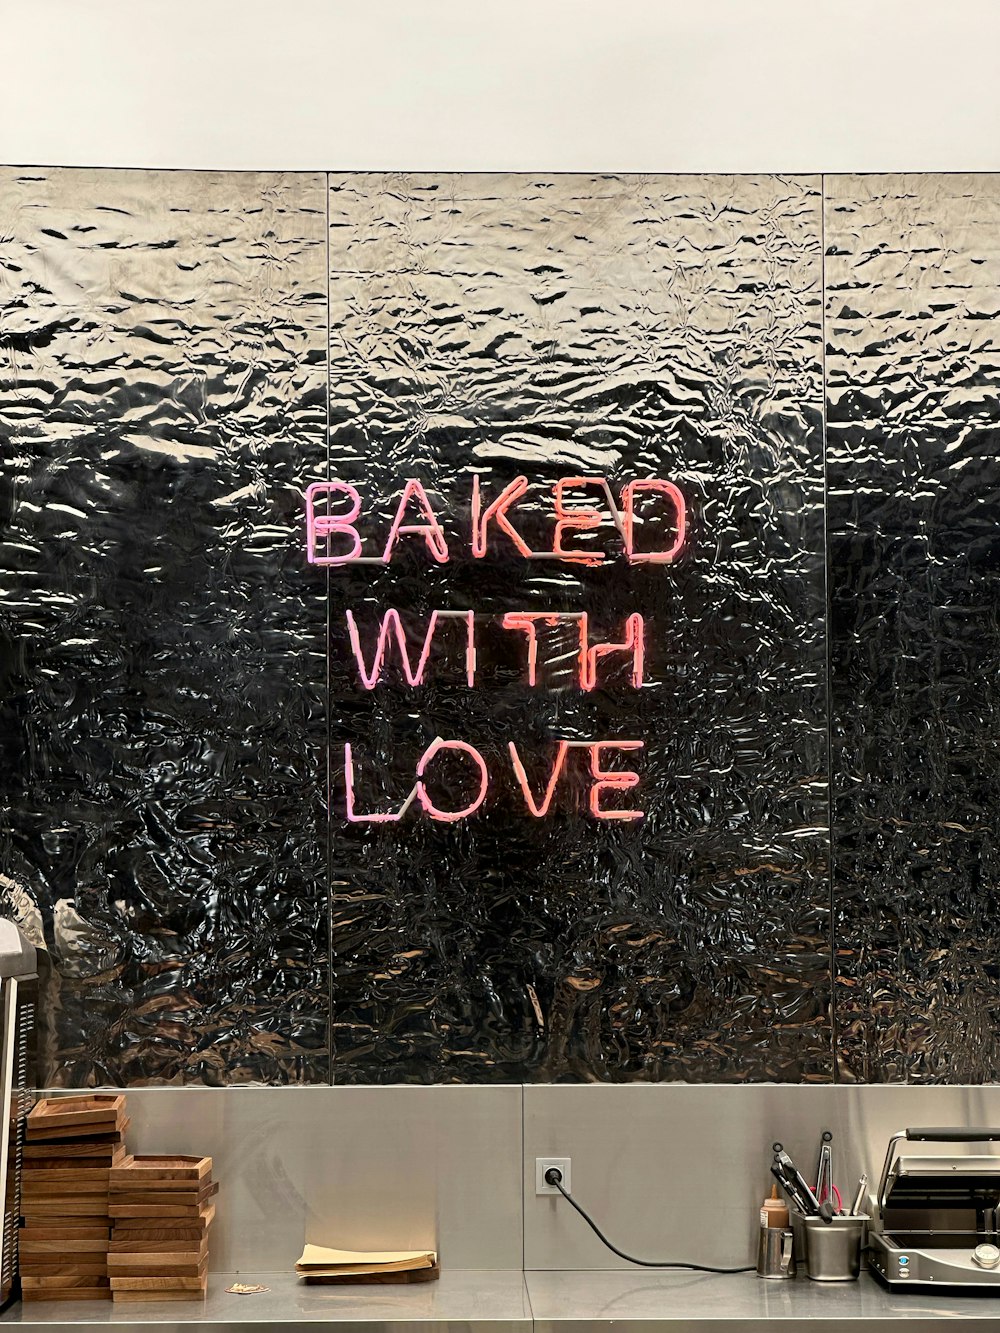 Ein Schild mit der Aufschrift "Mit Liebe gebacken" an einer Glaswand